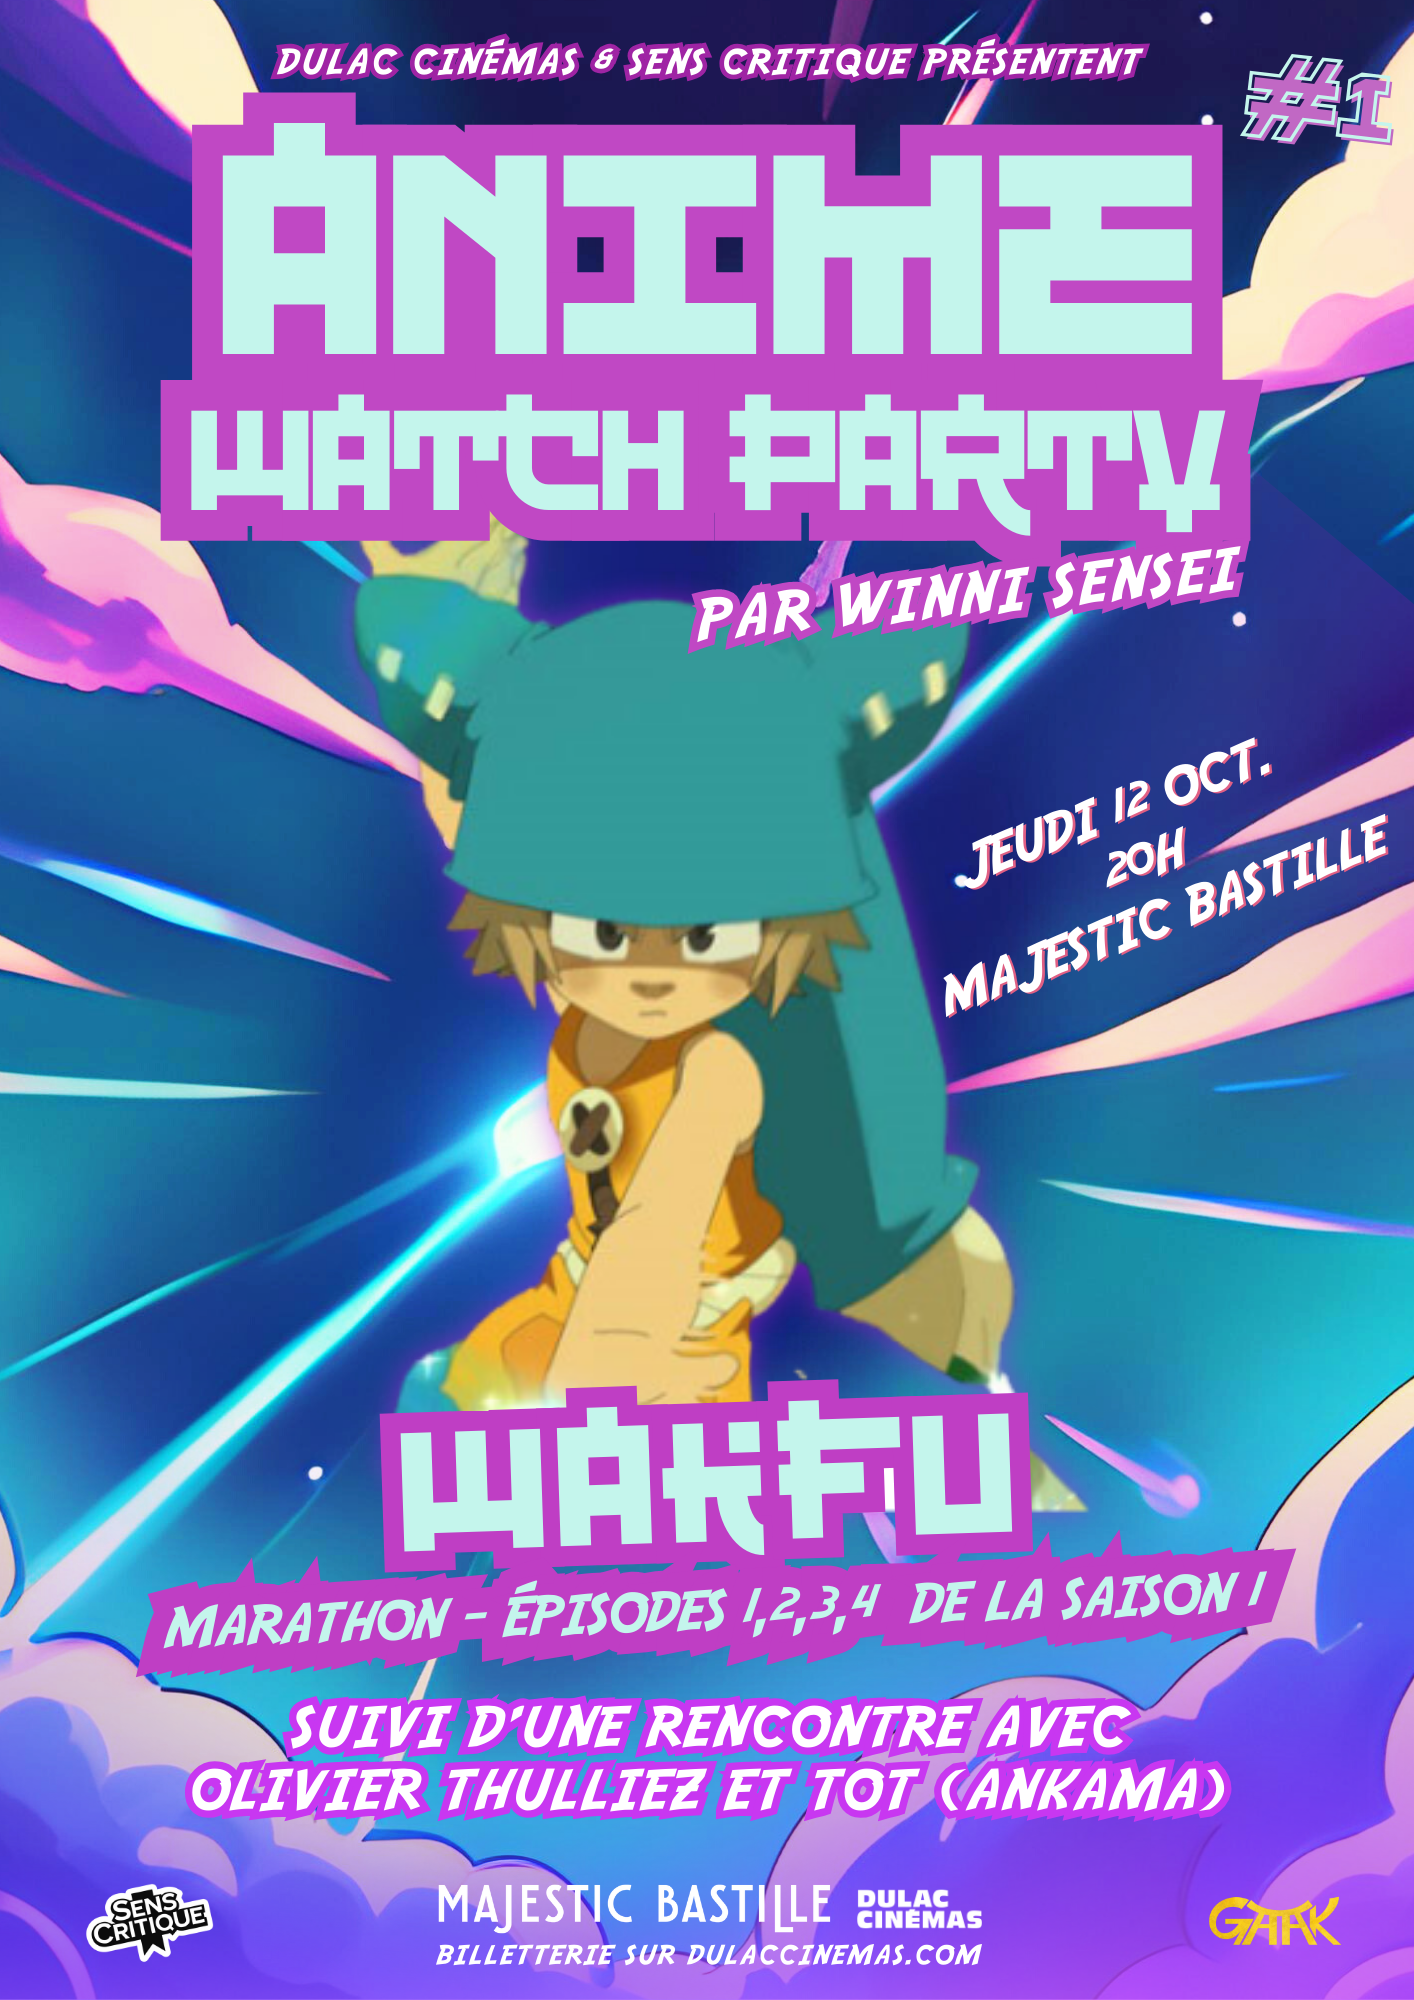 Wakfu - épisodes 1 à 4 - saison 1